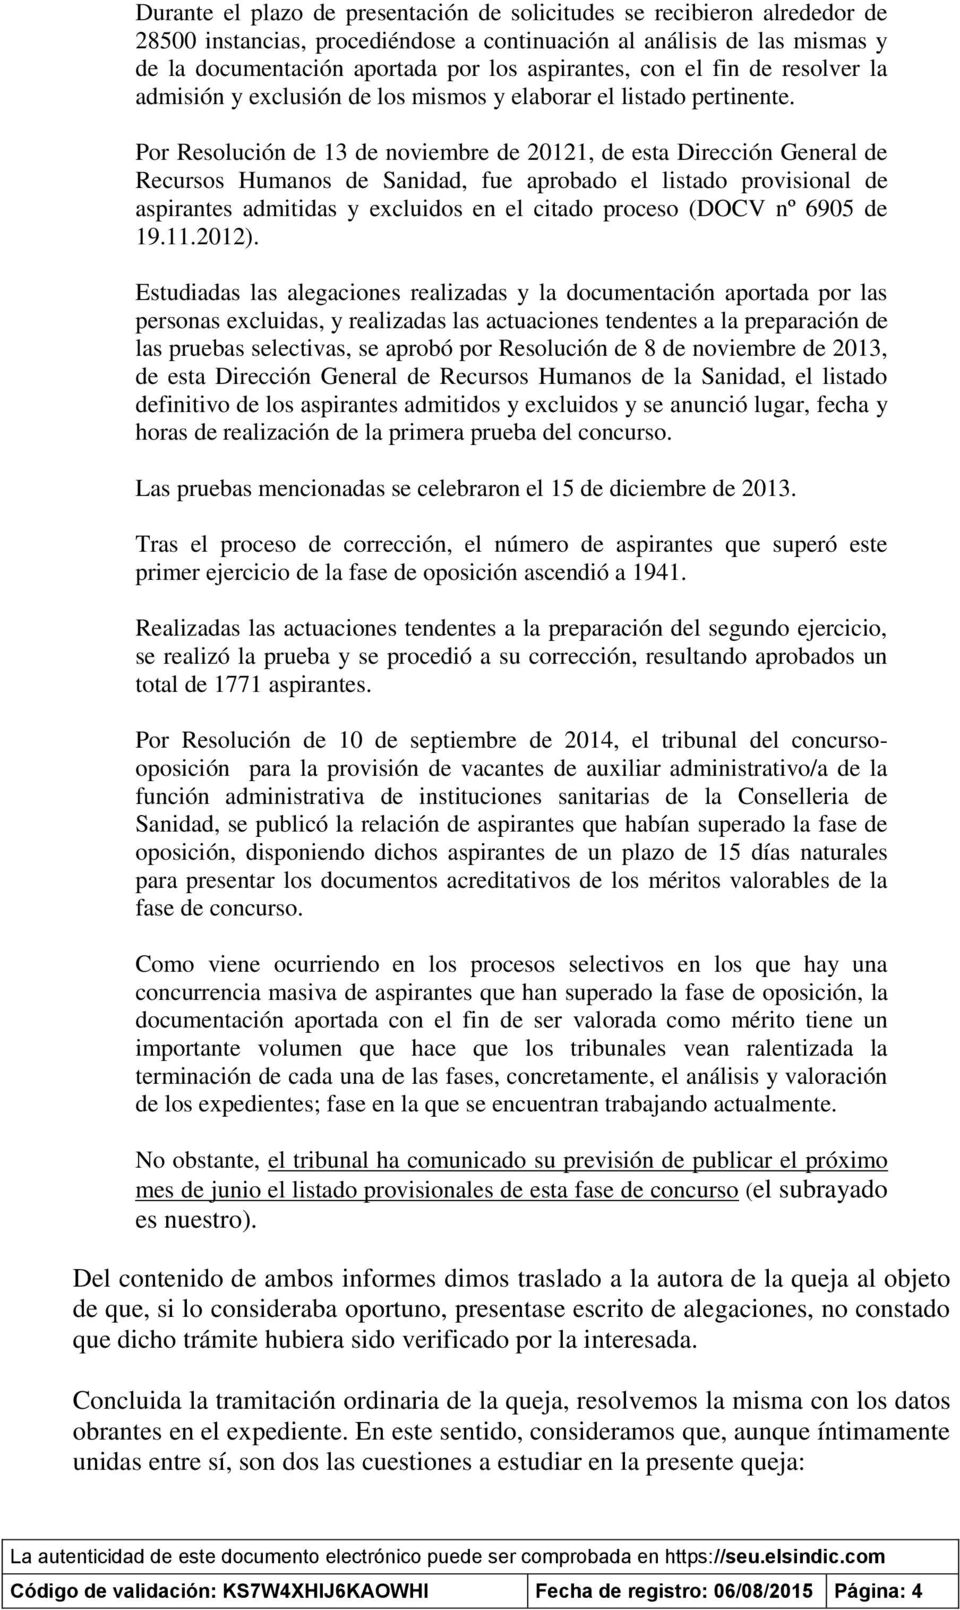 Por Resolución de 13 de noviembre de 20121, de esta Dirección General de Recursos Humanos de Sanidad, fue aprobado el listado provisional de aspirantes admitidas y excluidos en el citado proceso